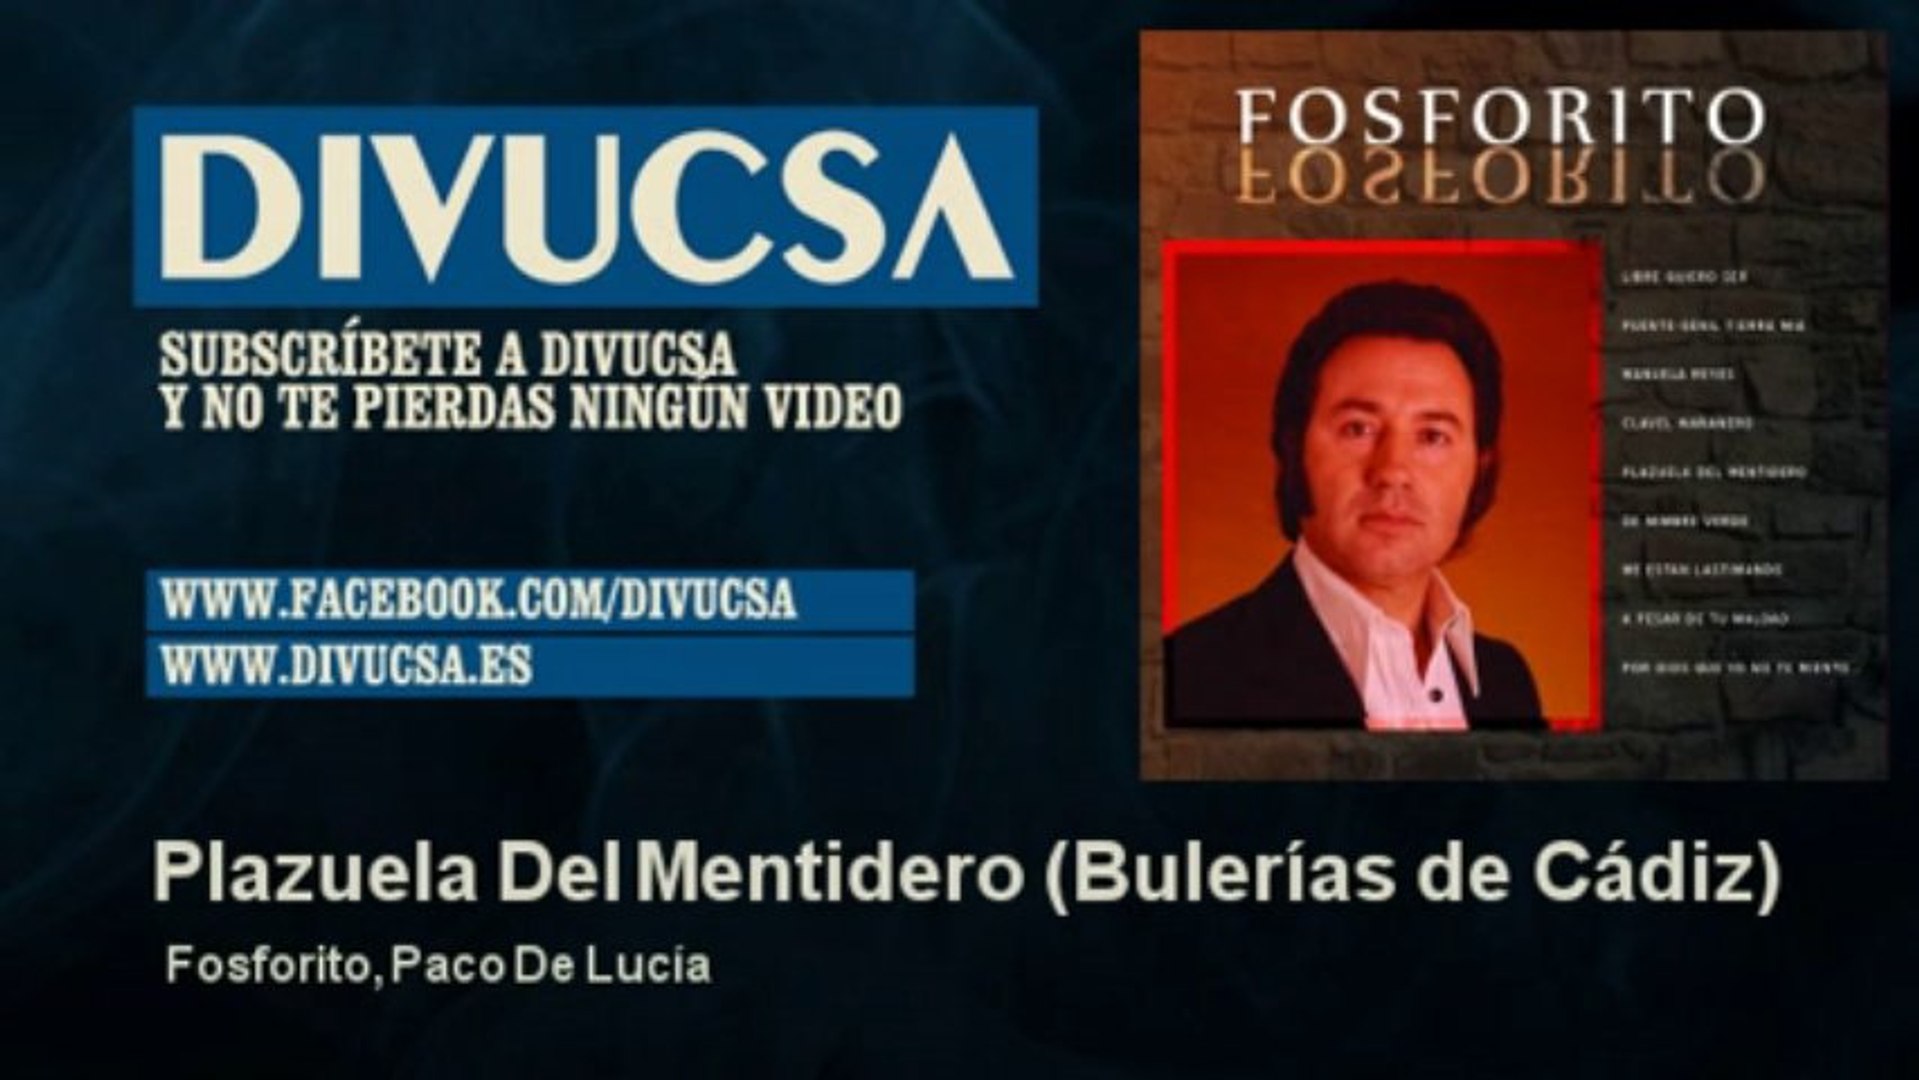 Fosforito, Paco De Lucía - Plazuela Del Mentidero - Bulerías de Cádiz -  Vídeo Dailymotion